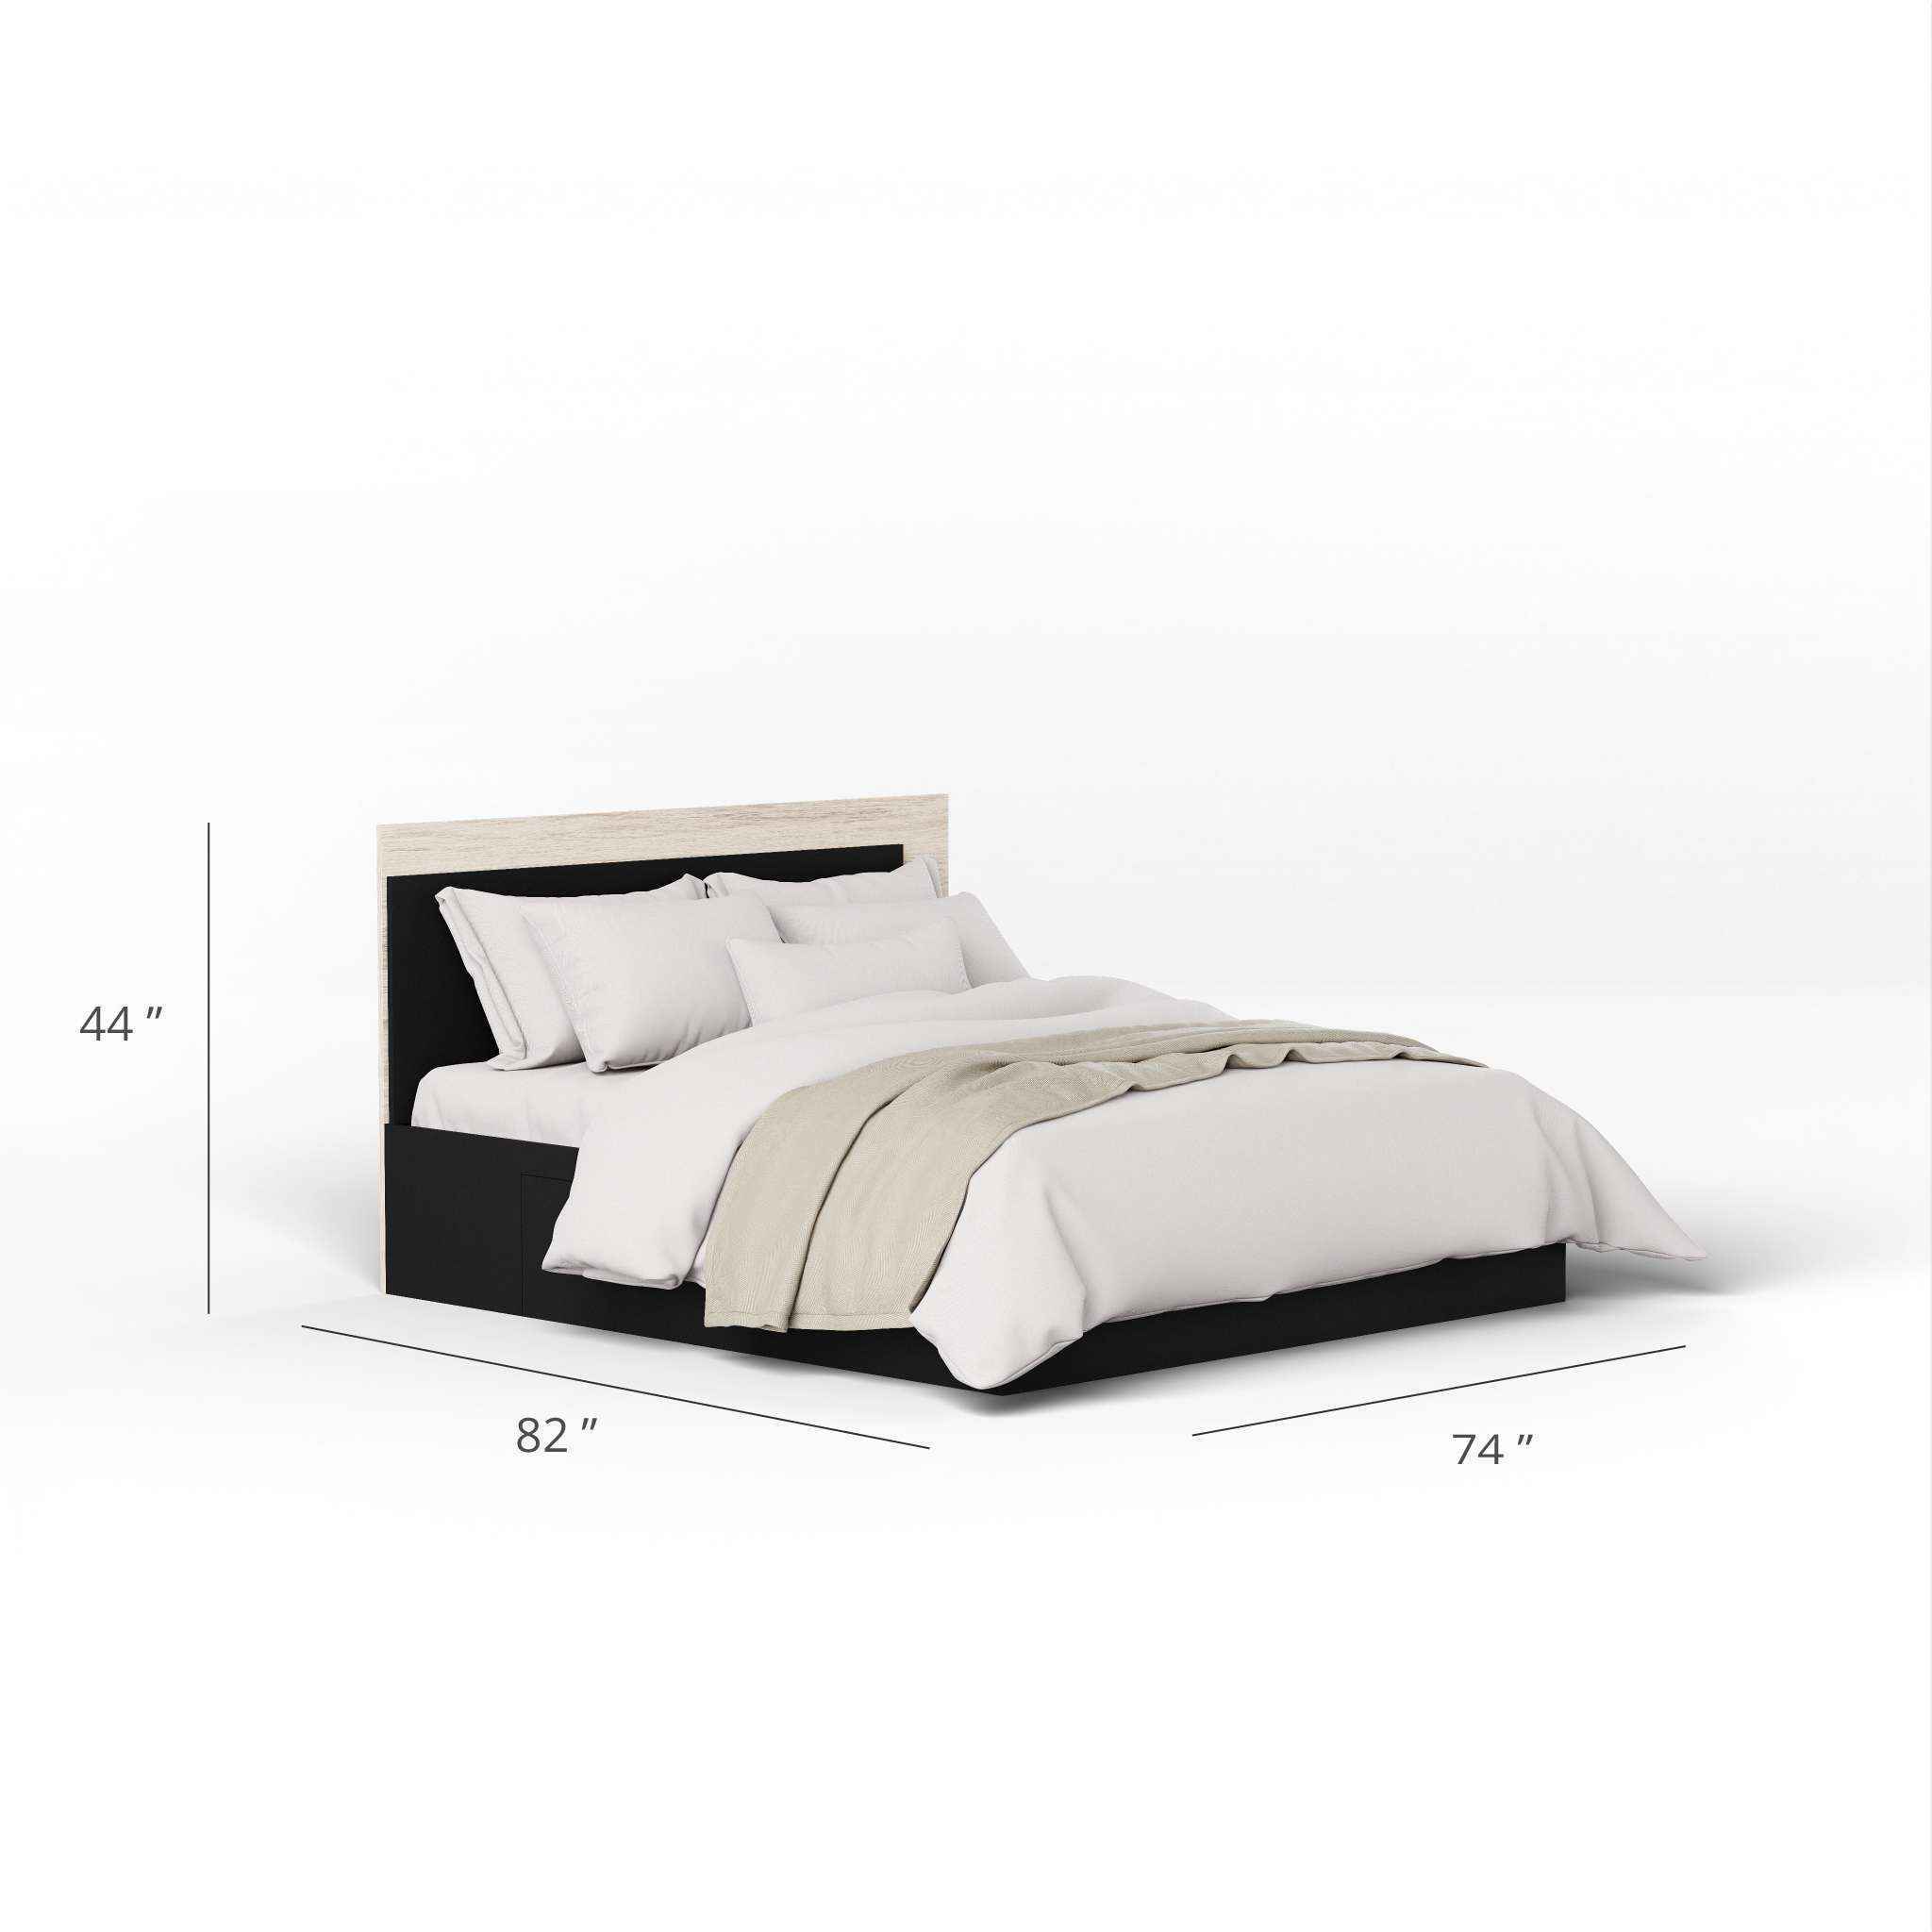 Minsan Queen Size Bed